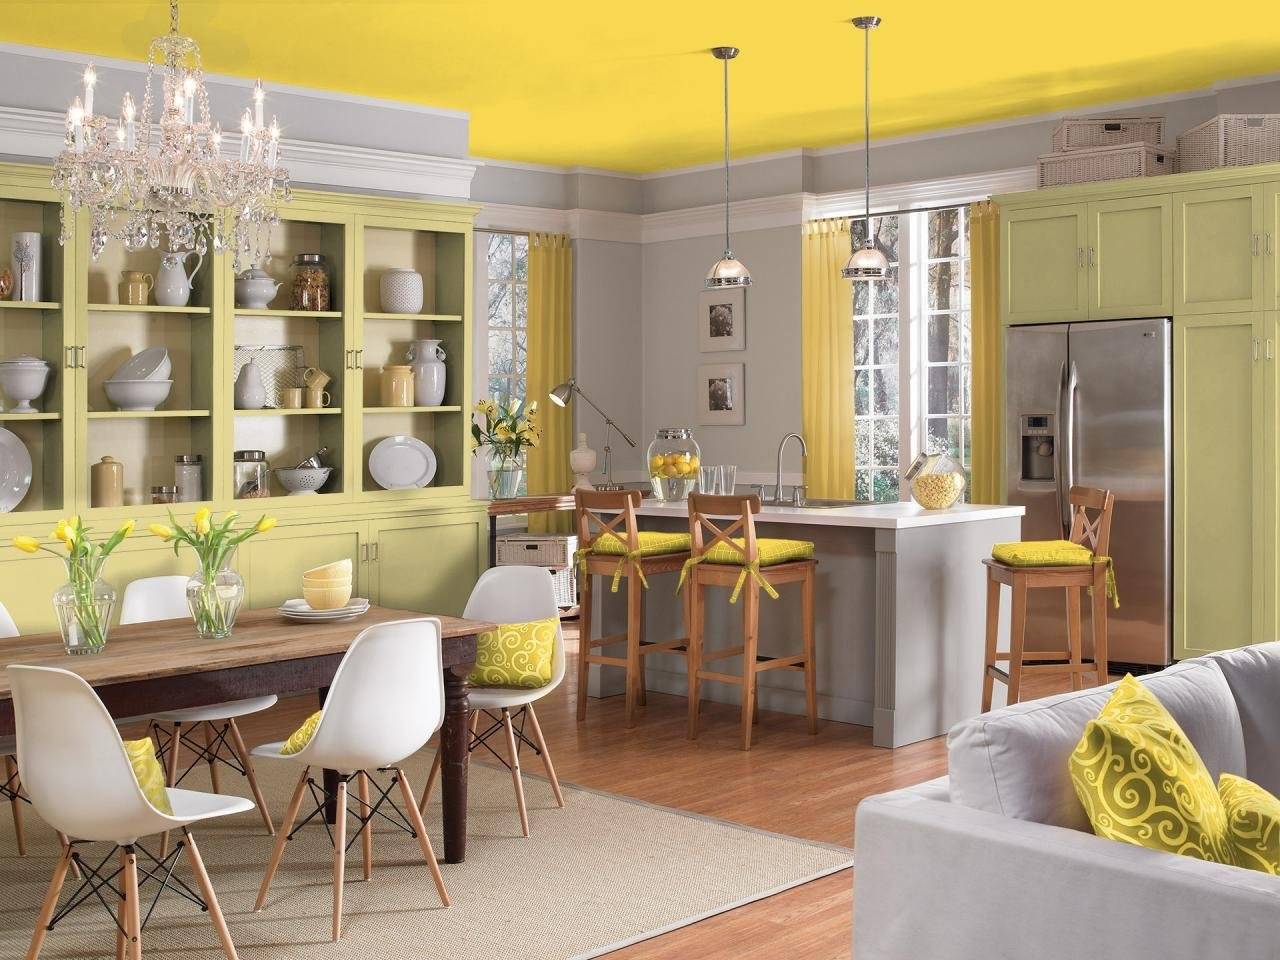 Горчичная столовая. Желтая кухня в интерьере. Лимонный цвет в интерьере кухни. Желтые стены на кухне. Кухня лимонного цвета.